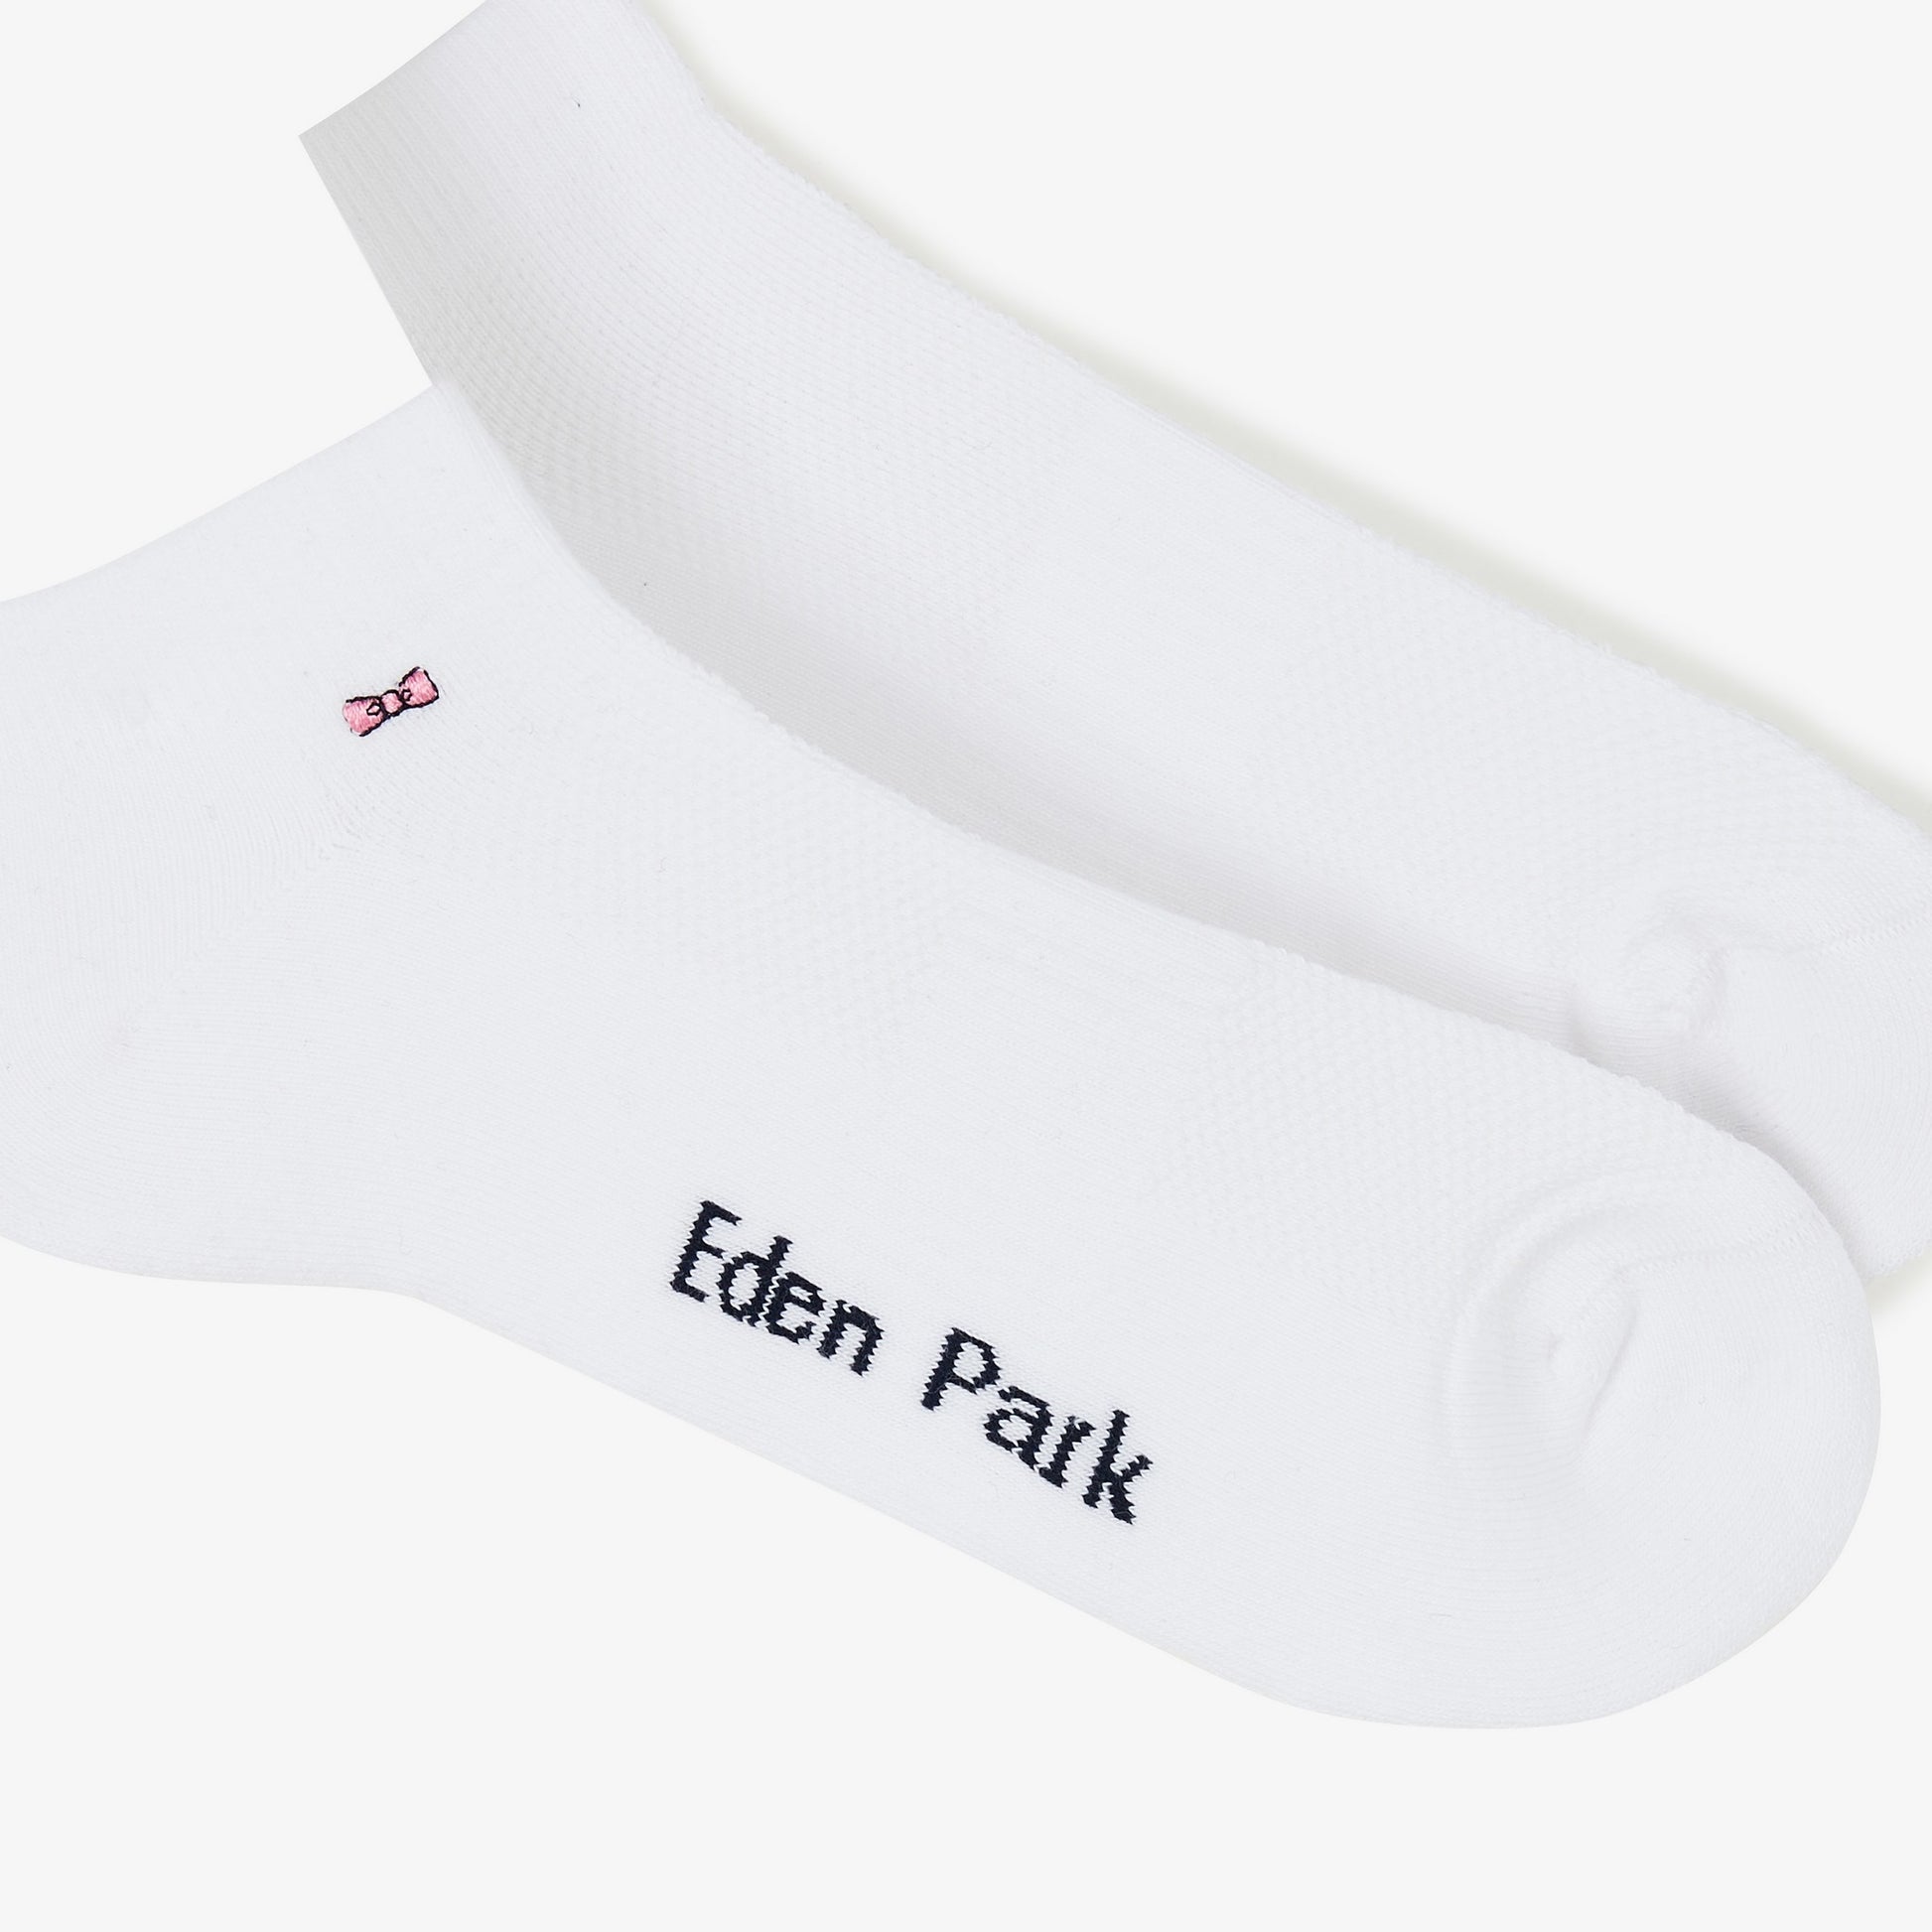 Lot de 2 paires de chaussettes jeu de maille unies – Eden Park